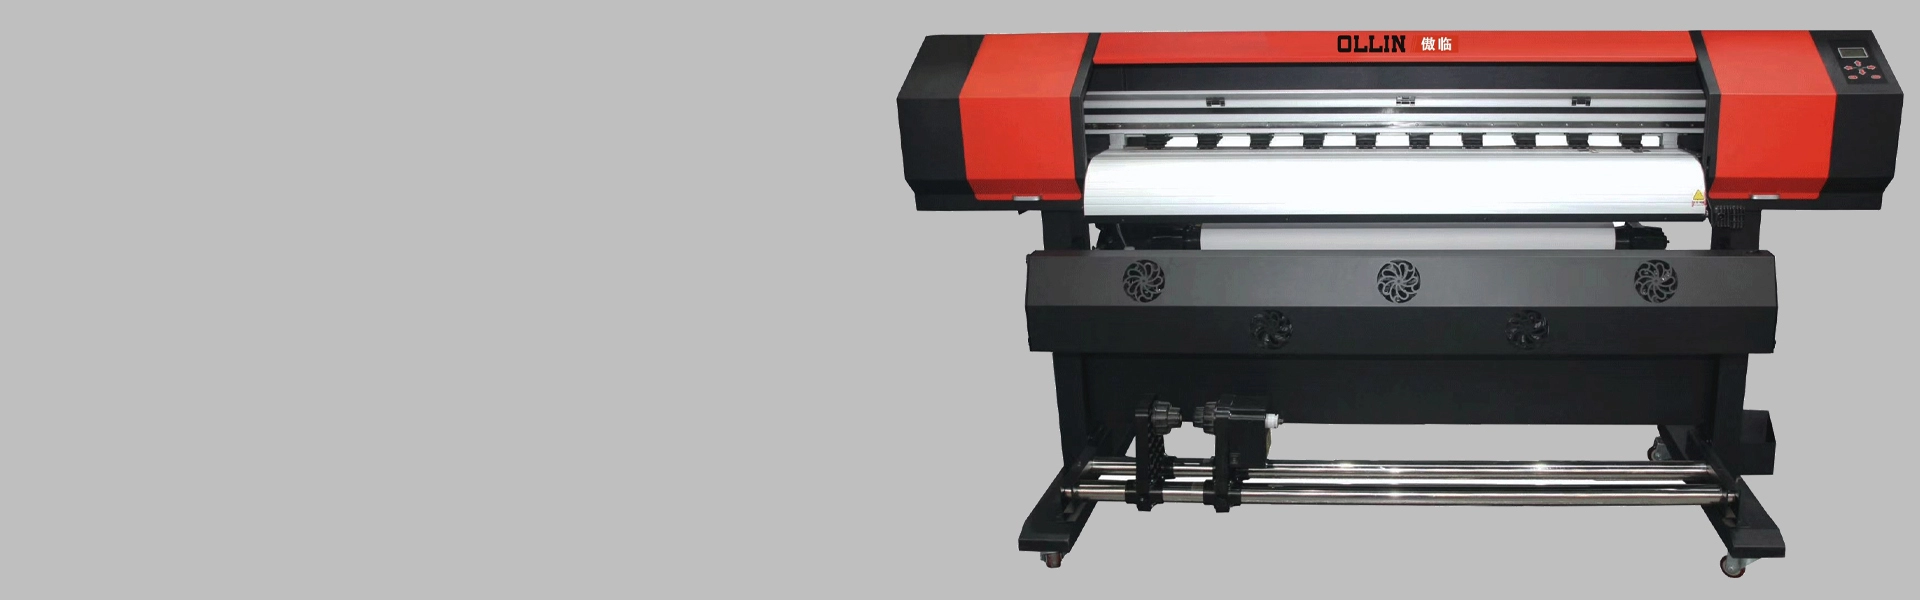 1,2 m XP600-printer